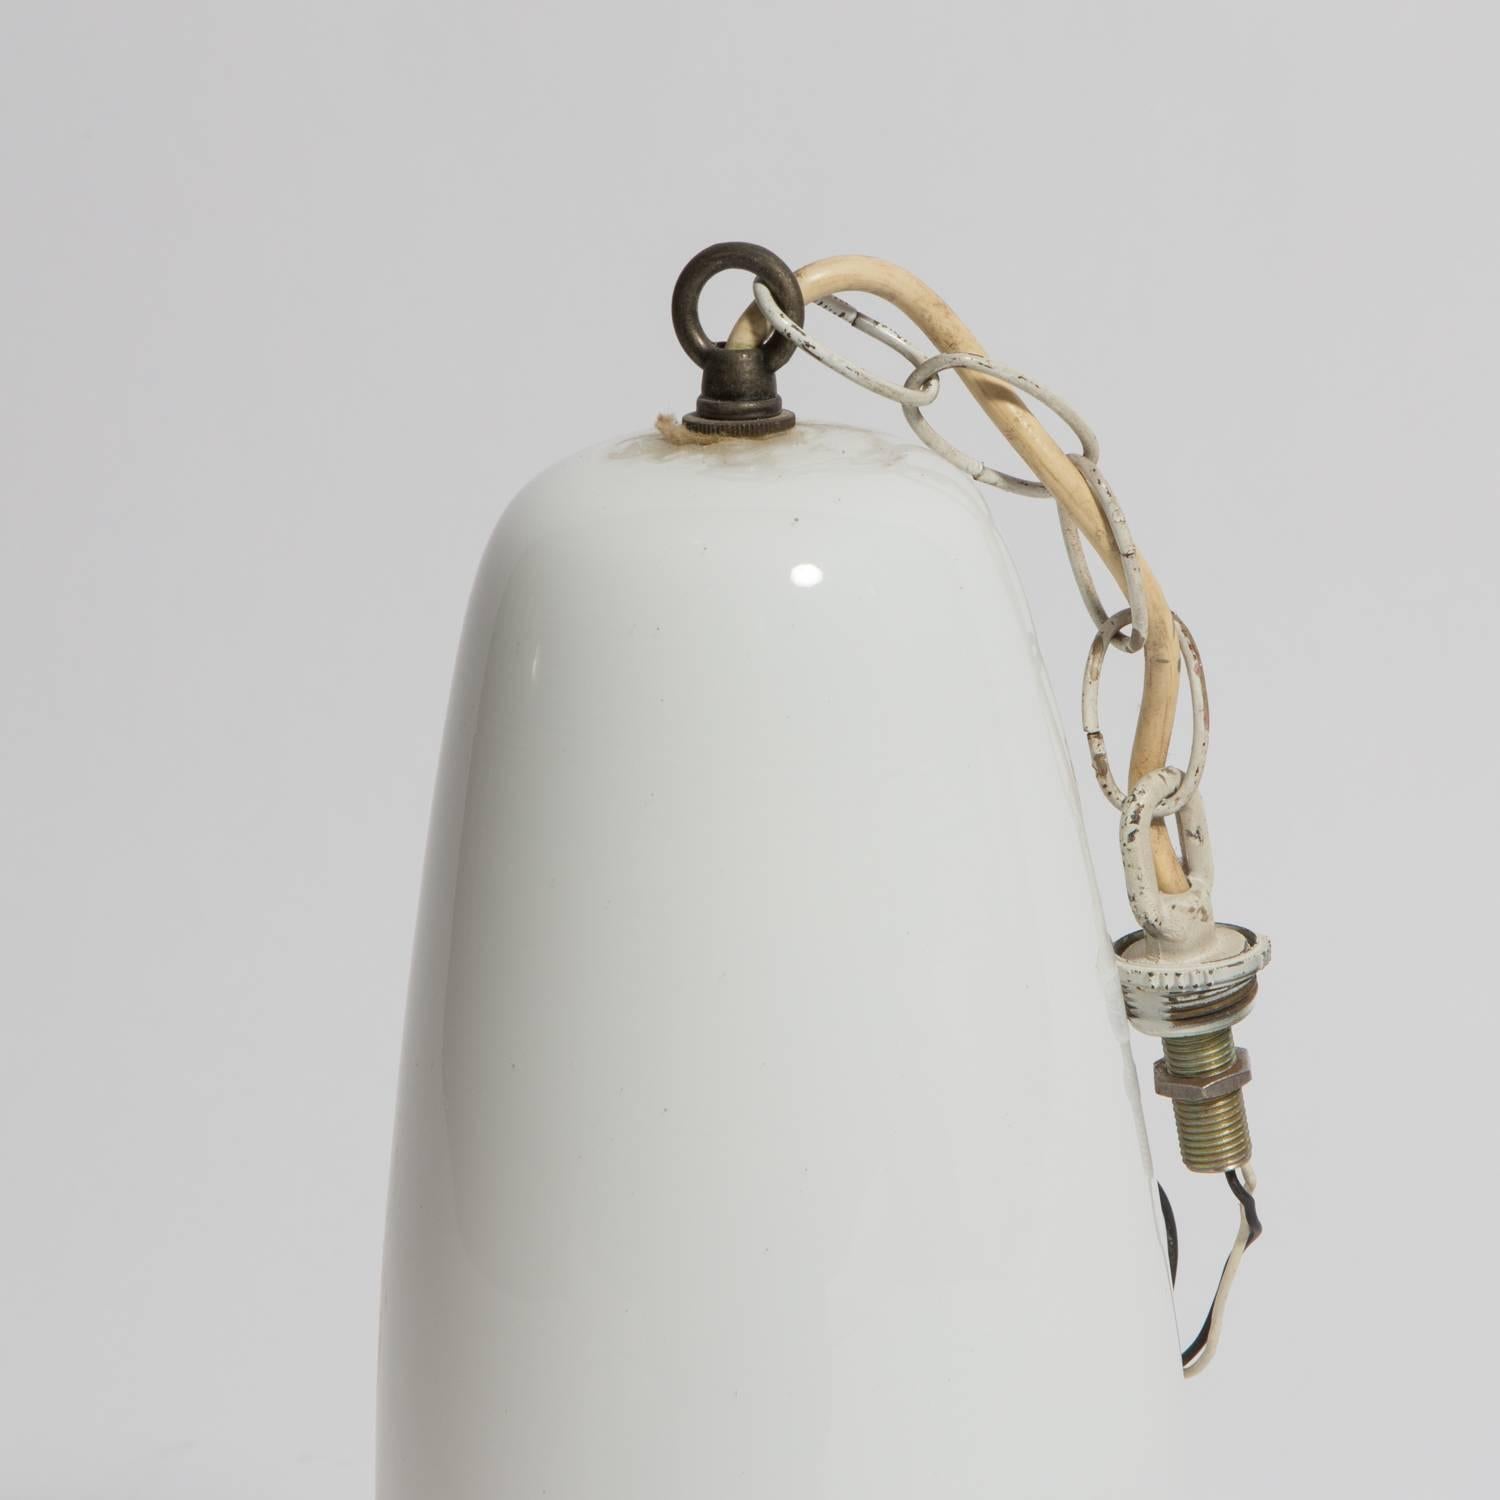 Handblown glass pendant designed in the 1960s by Massimo Vignelli for Italian manufacturer, Venini.